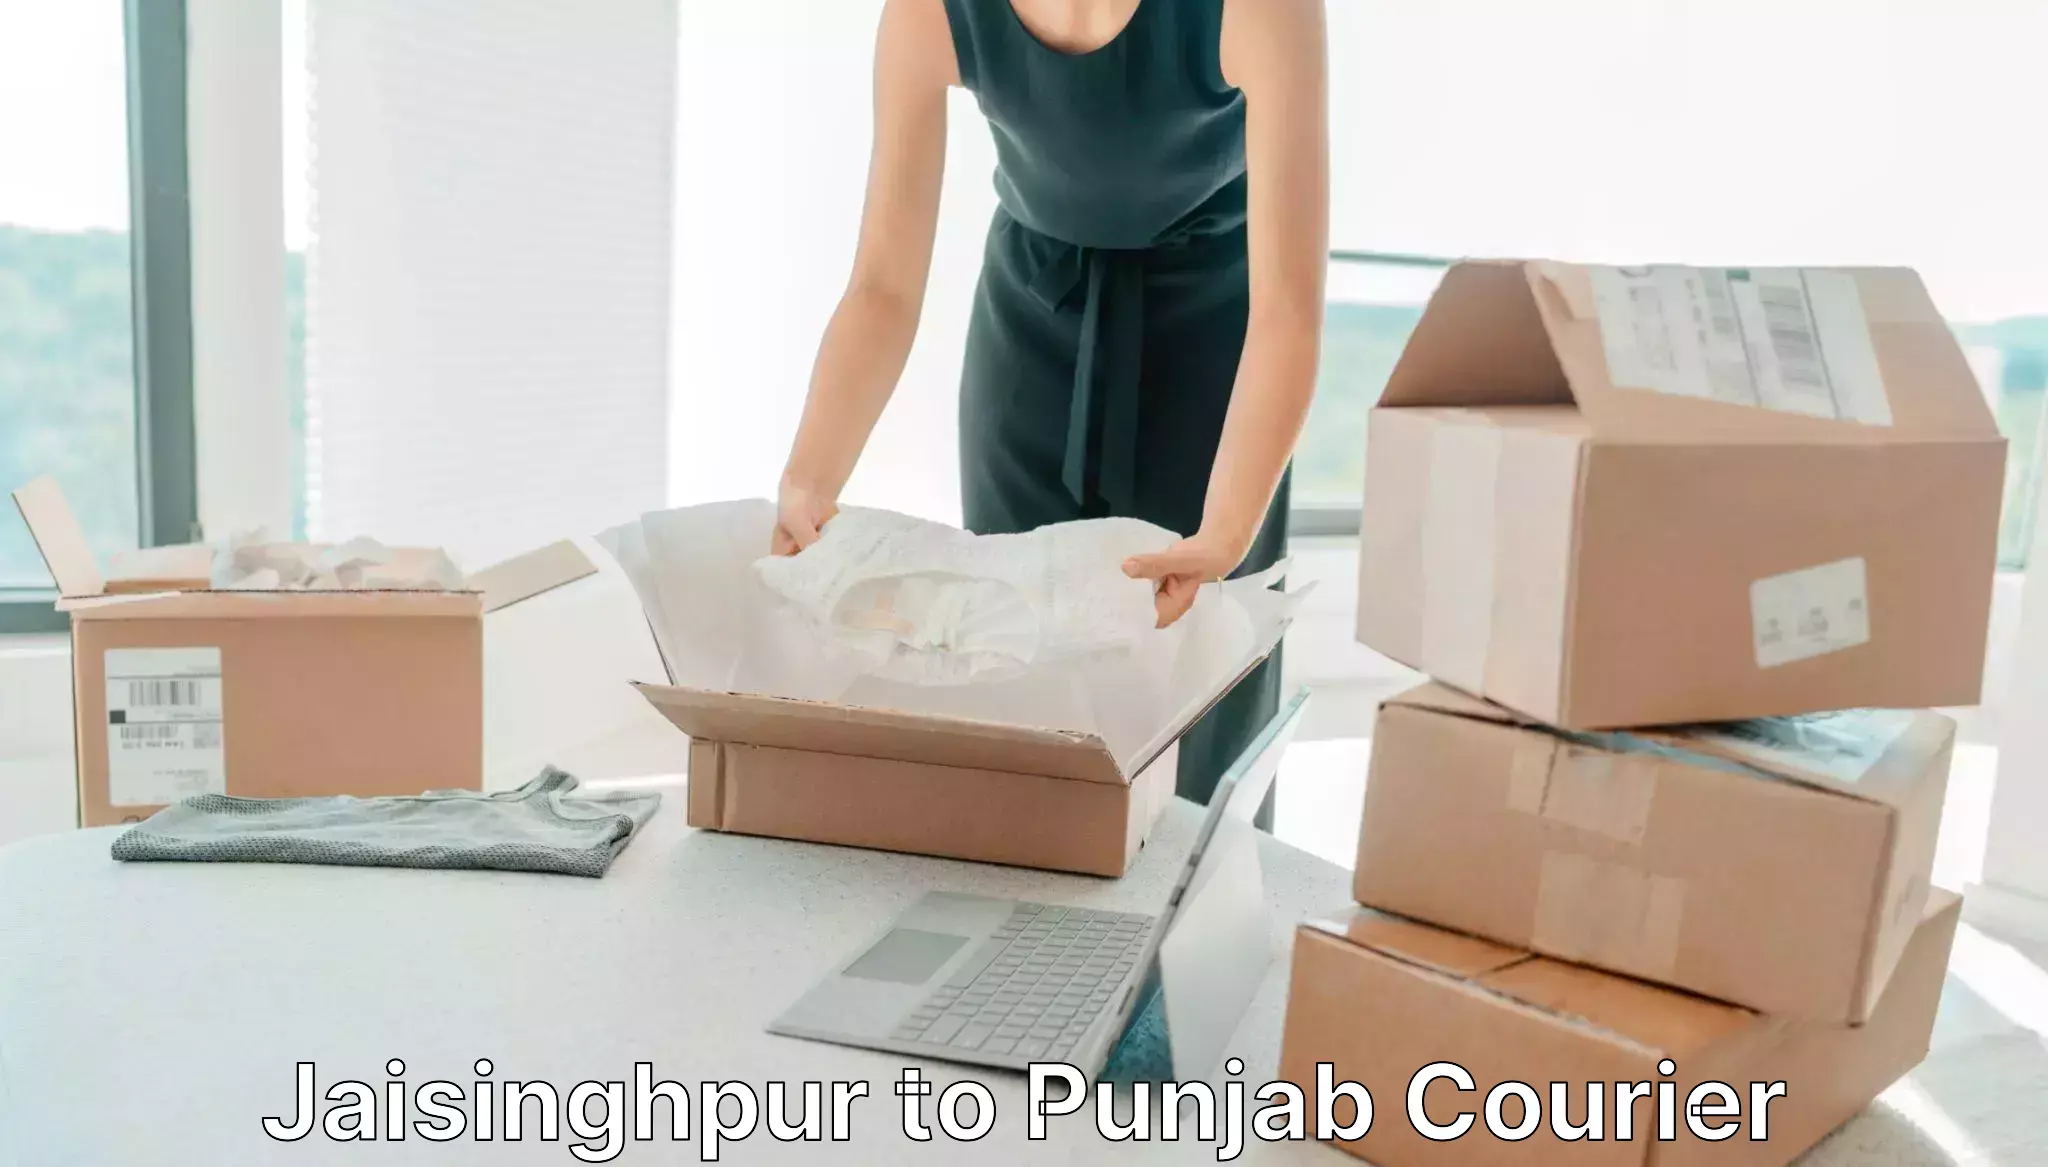 Reliable courier service Jaisinghpur to Punjab